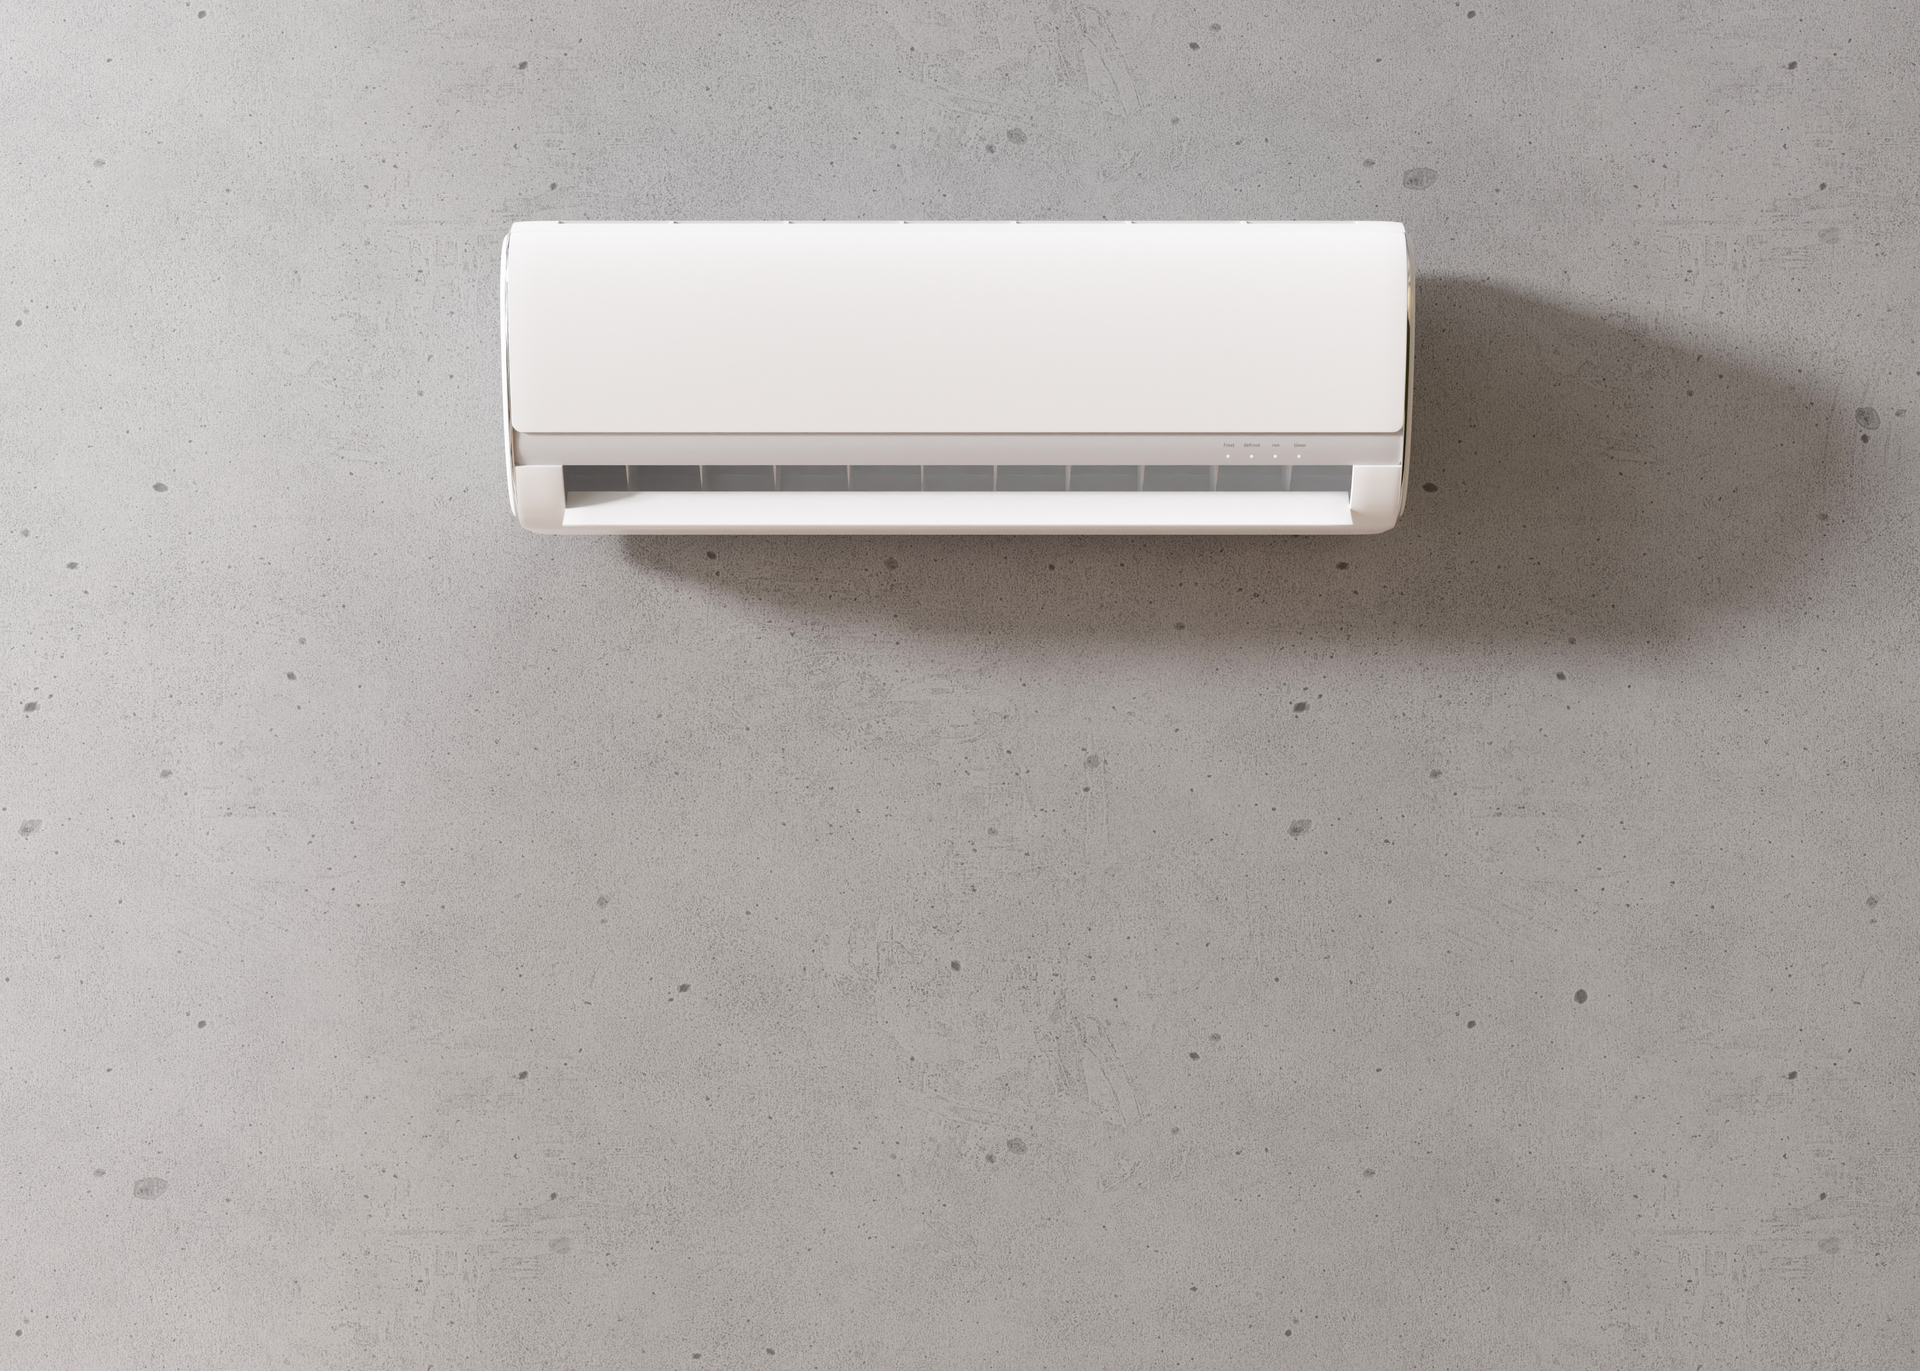 Na zdjęciu zobaczyć można biały klimatyzator, który wisząc na ścianie stanowi jedno z głównych urządzeń w mieszkaniu. Dzięki swojej funkcjonalności i nowoczesnemu wyglądowi, klimatyzator idealnie wpasowuje się w styl wnętrza i stanowi element jego dekoracji. Urządzenie jest wyposażone w funkcję chłodzenia, która umożliwia utrzymanie odpowiedniej temperatury w pomieszczeniu, zapewniając komfort użytkownikom nawet w najgorętsze dni. Na zdjęciu widać również inne elementy wyposażenia mieszkania, takie jak kanapa i stół, które dopełniają całości i tworzą przytulną przestrzeń. Obrazek kojarzy się z wygodą i funkcjonalnością, co może zachęcić osoby poszukujące sposobów na poprawę jakości życia w swoim mieszkaniu lub domu.